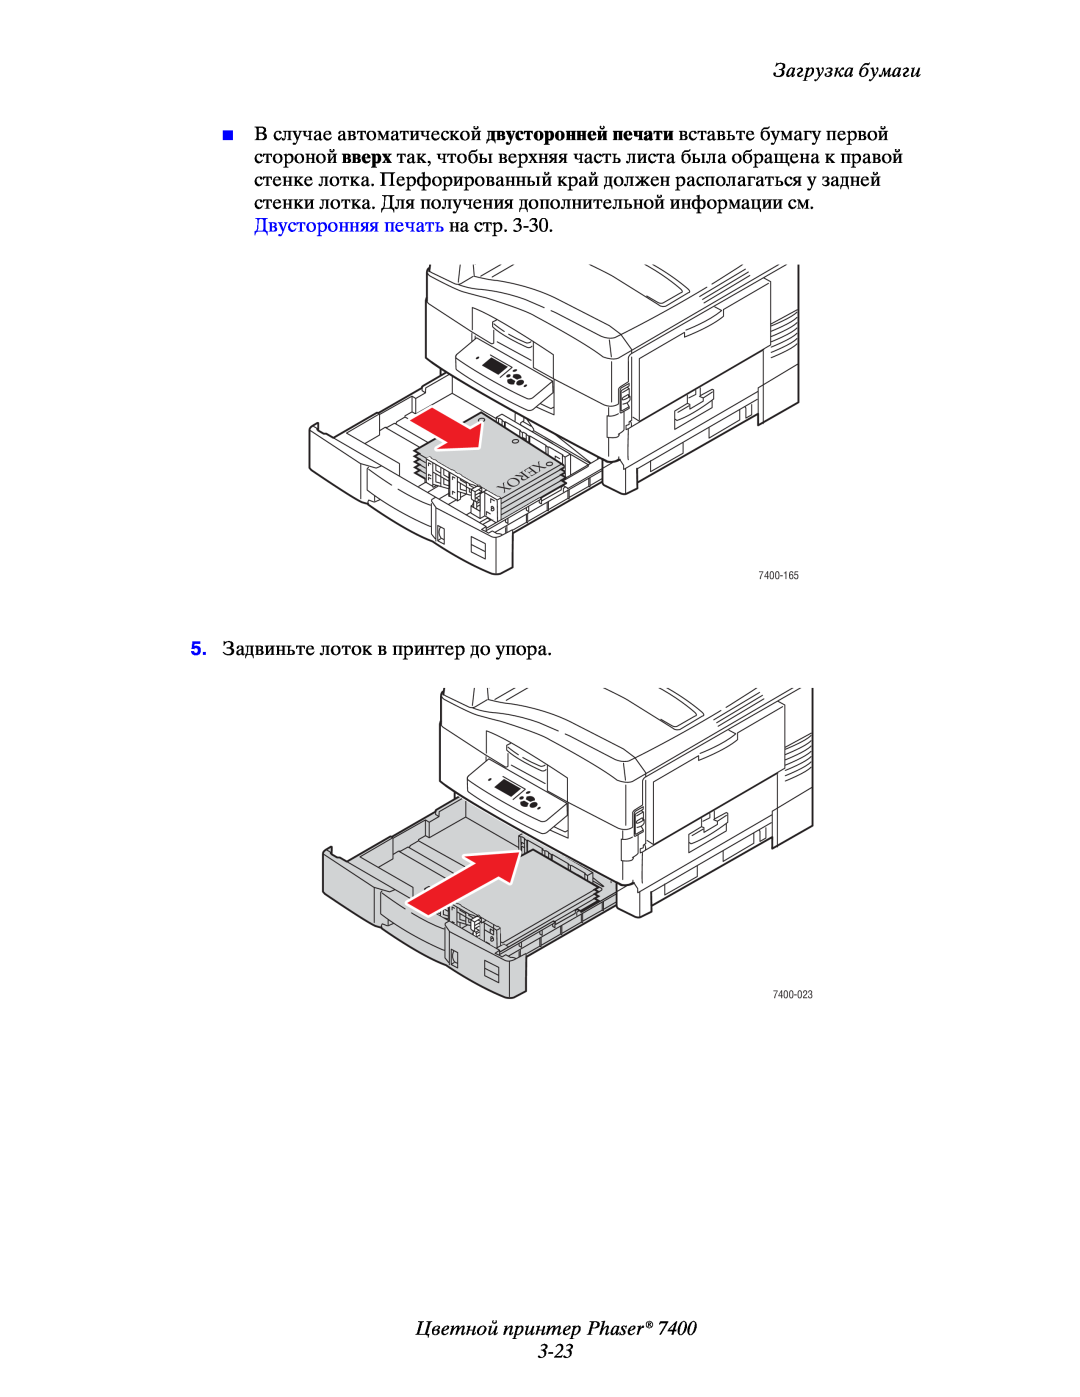 Xerox manual Цветной принтер Phaser 3-23, Загрузка бумаги, 5.Задвиньте лоток в принтер до упора, 7400-165, 7400-023 